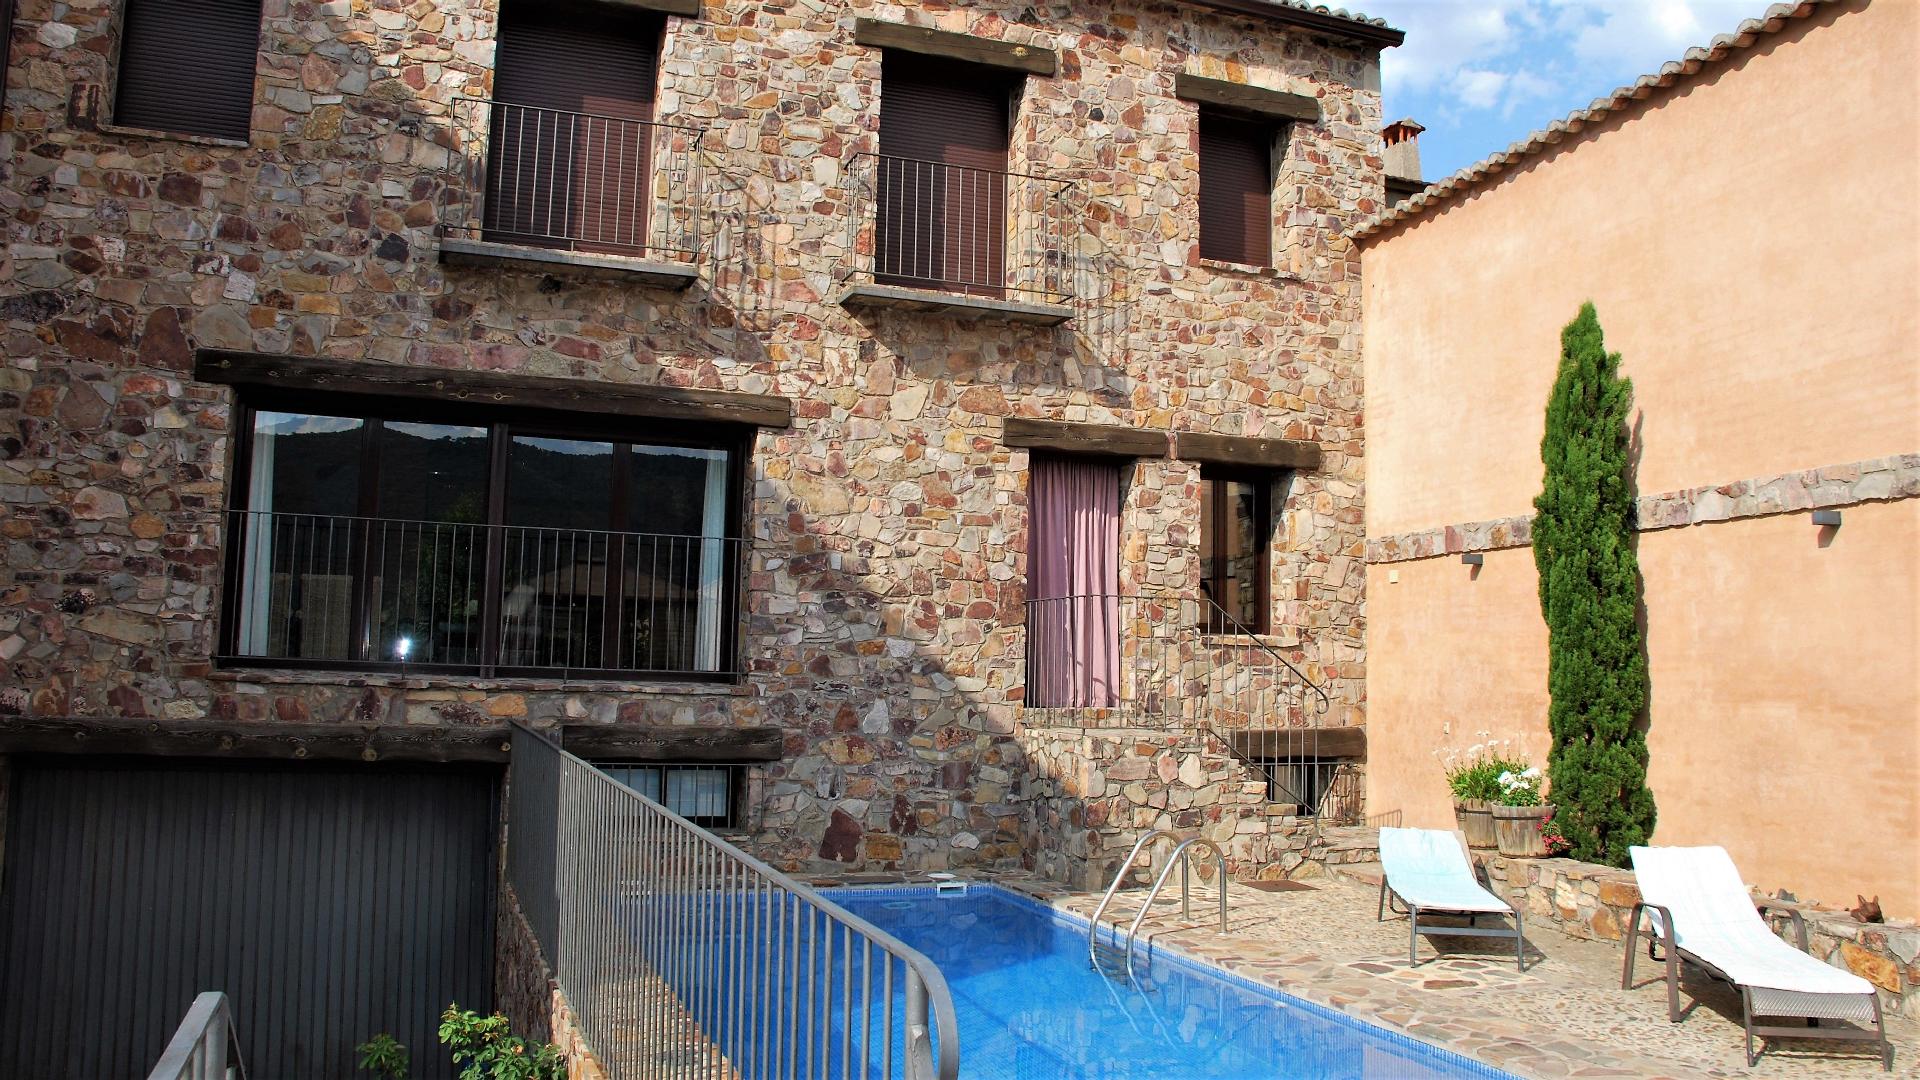 Ferienhaus mit Privatpool für 8 Personen ca.  Ferienhaus in Spanien